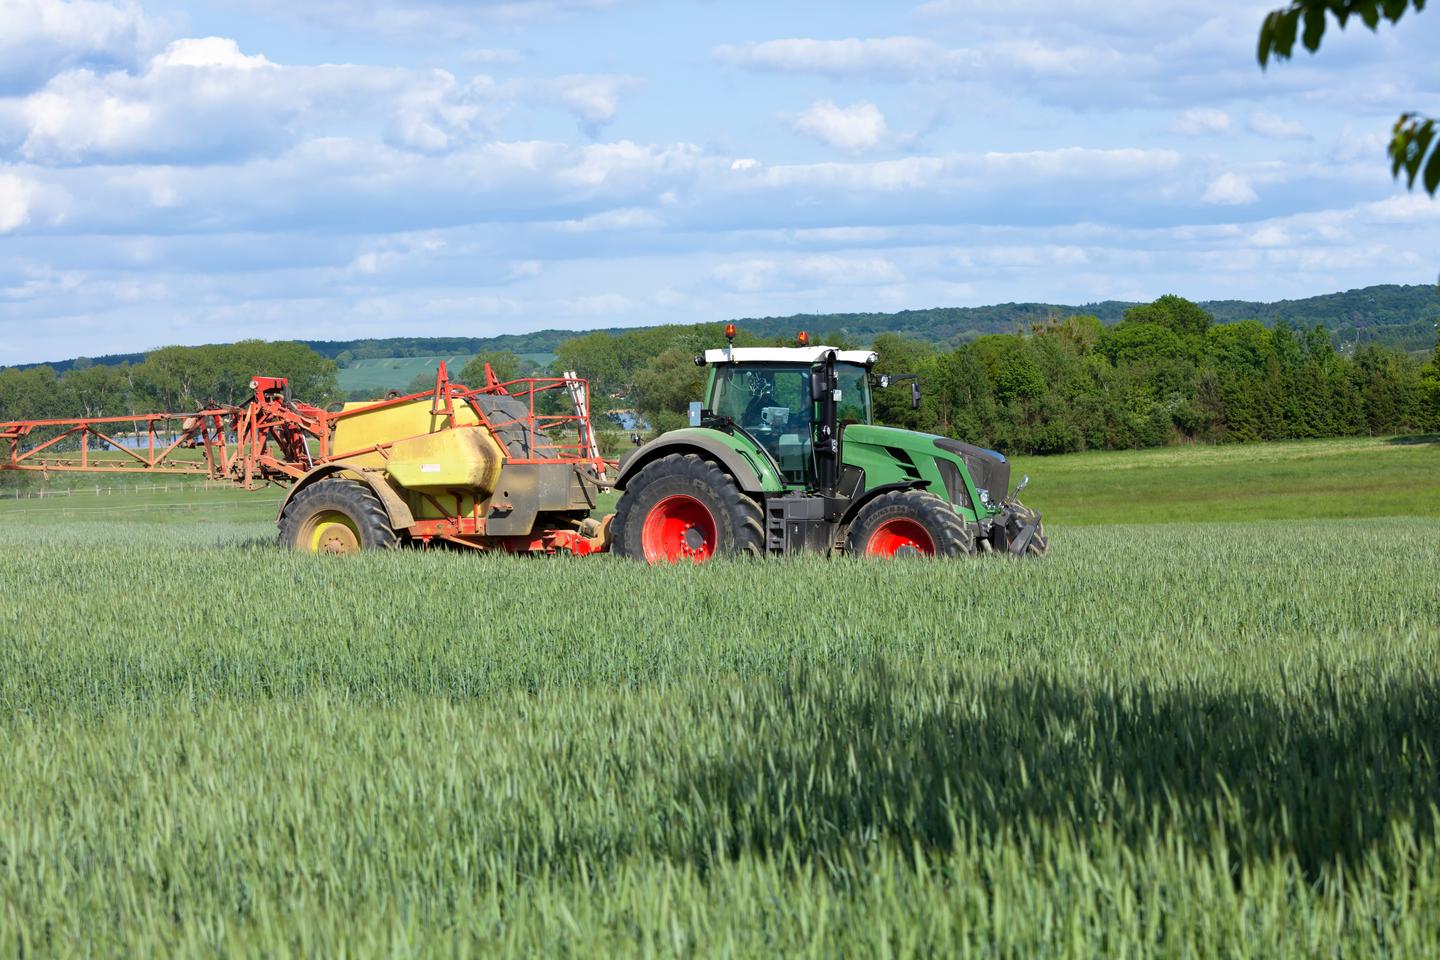 Traktor bringt Pflanzenschutzmittel auf Getreidefeld aus, um die Ernte vor Schädlingen und Krankheiten zu schützen.